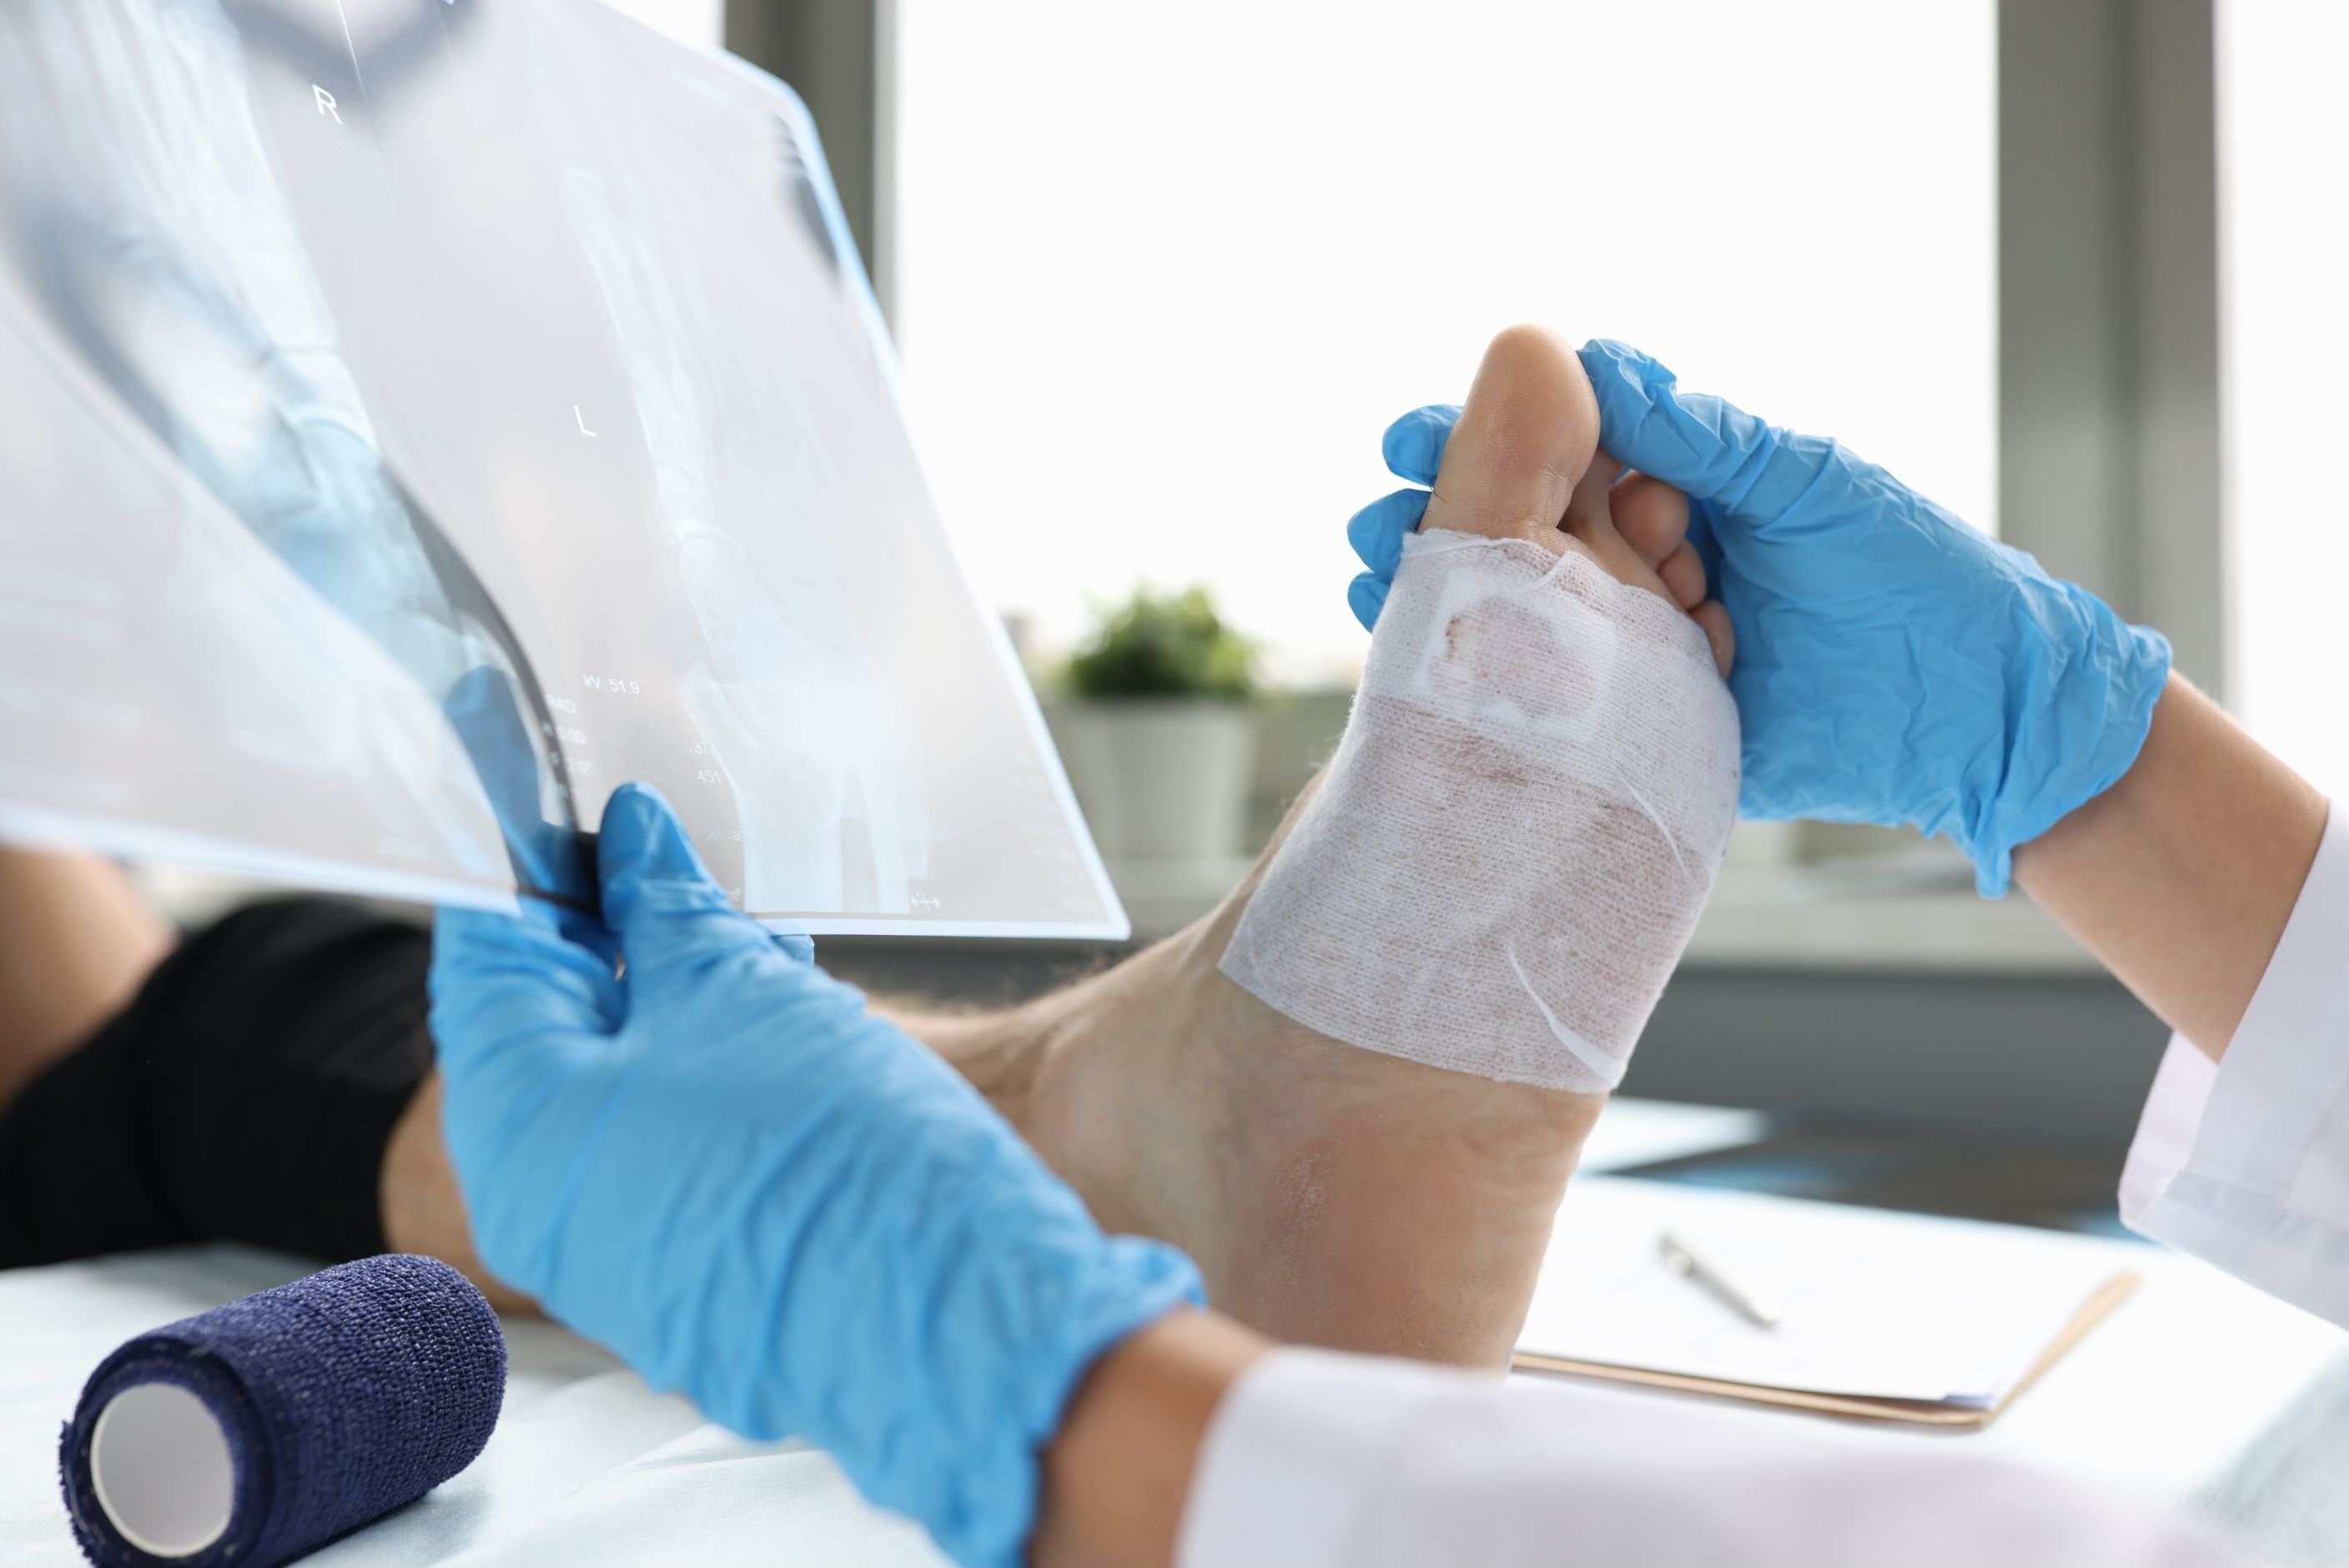 Podiatre qui tient une radiographie dans sa main tout en tenant le pied d'un patient qui a un pansement